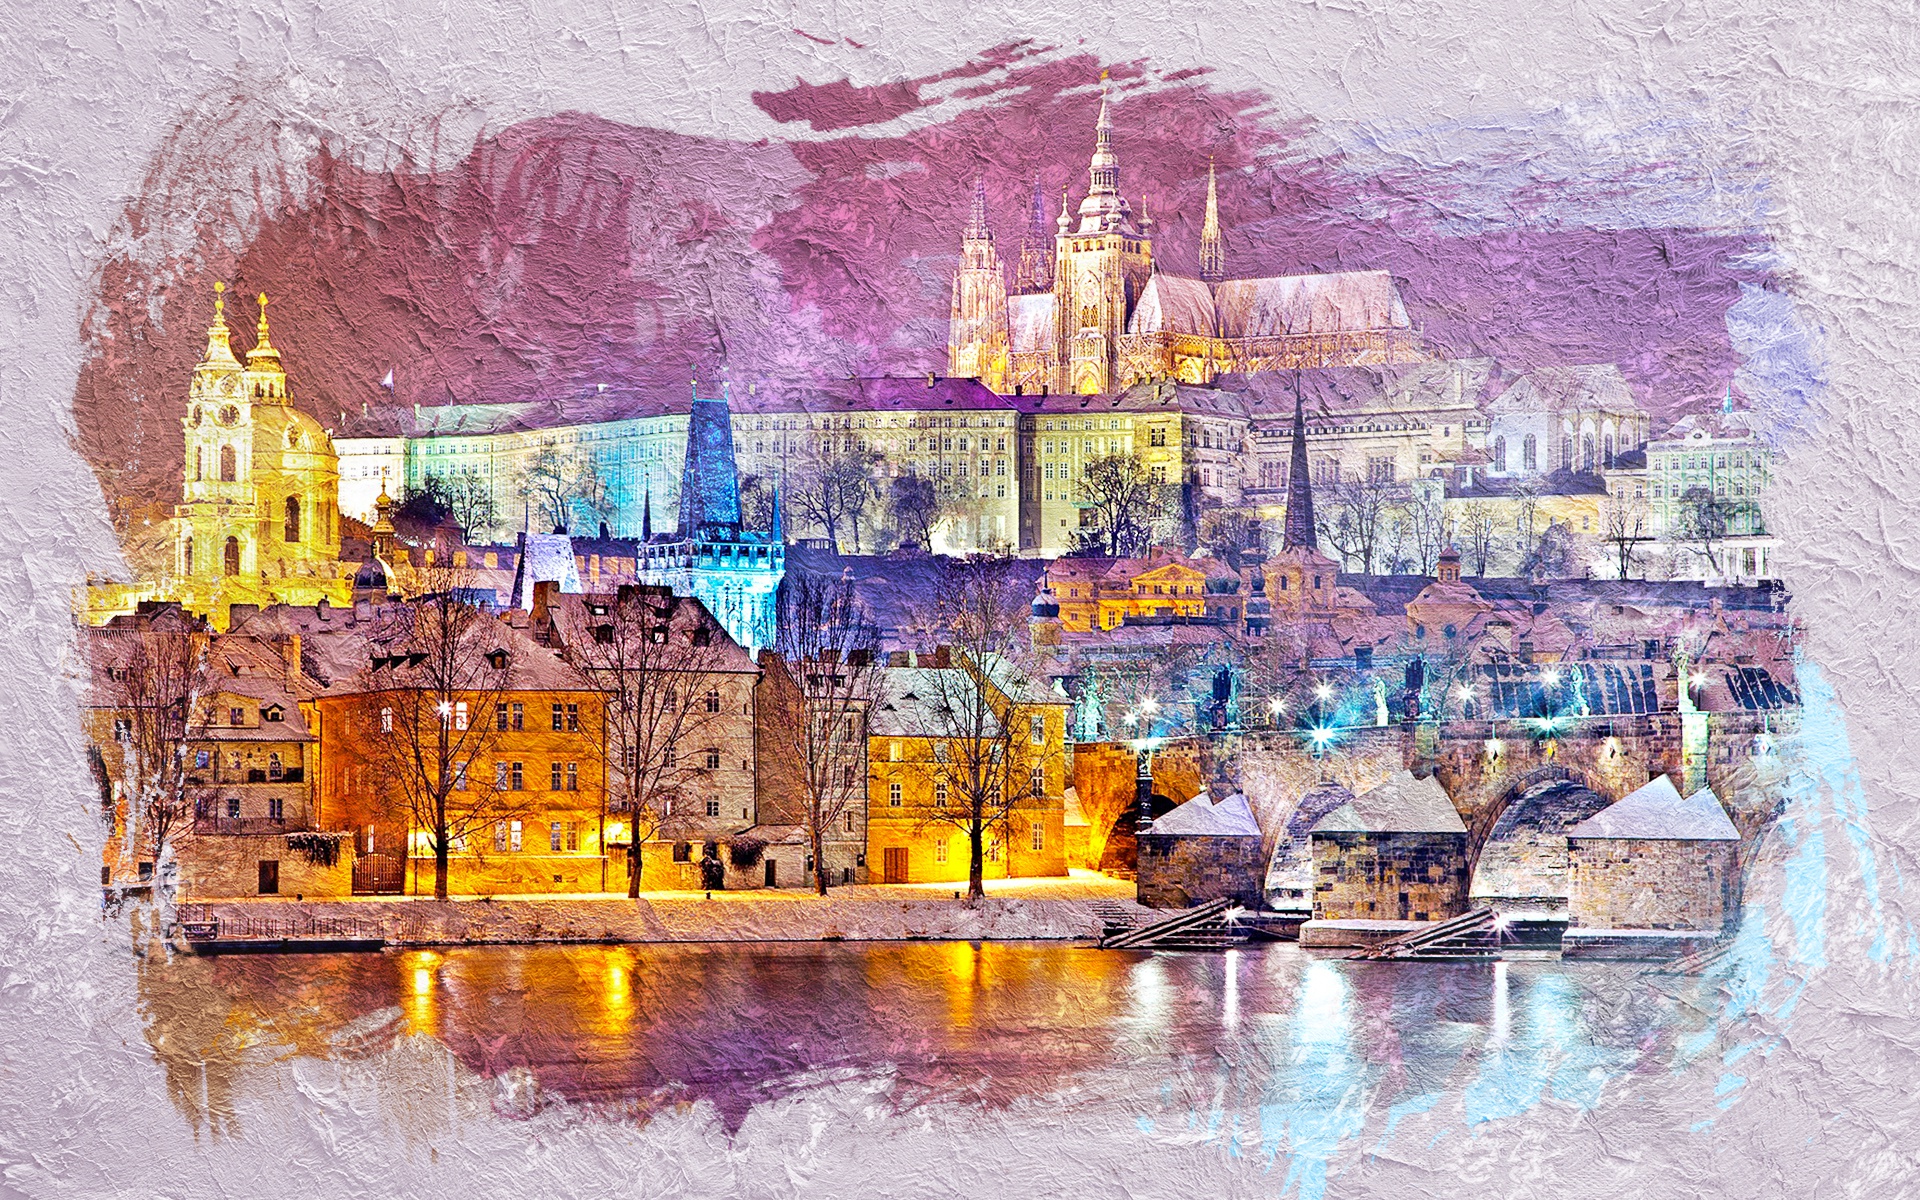 Скачать обои бесплатно Река, Город, Замок, Прага, Художественные картинка на рабочий стол ПК